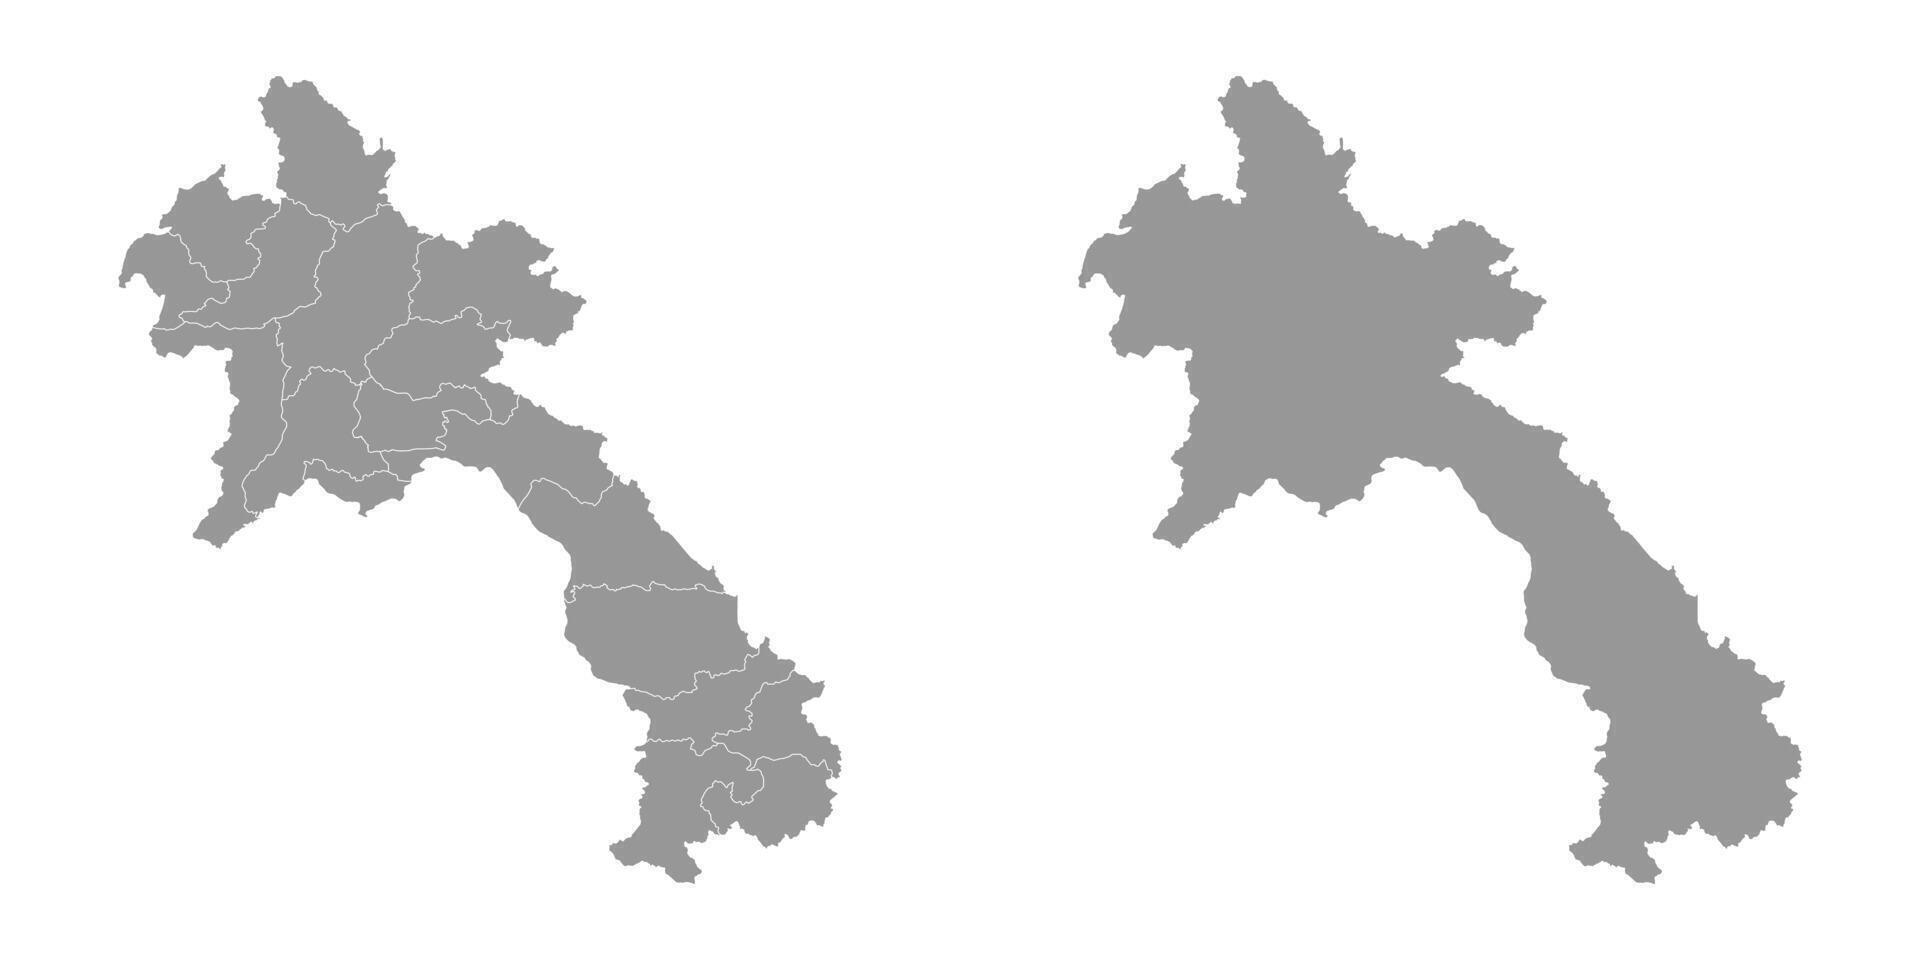 lao povos democrático república mapa com administrativo divisões. vetor ilustração.